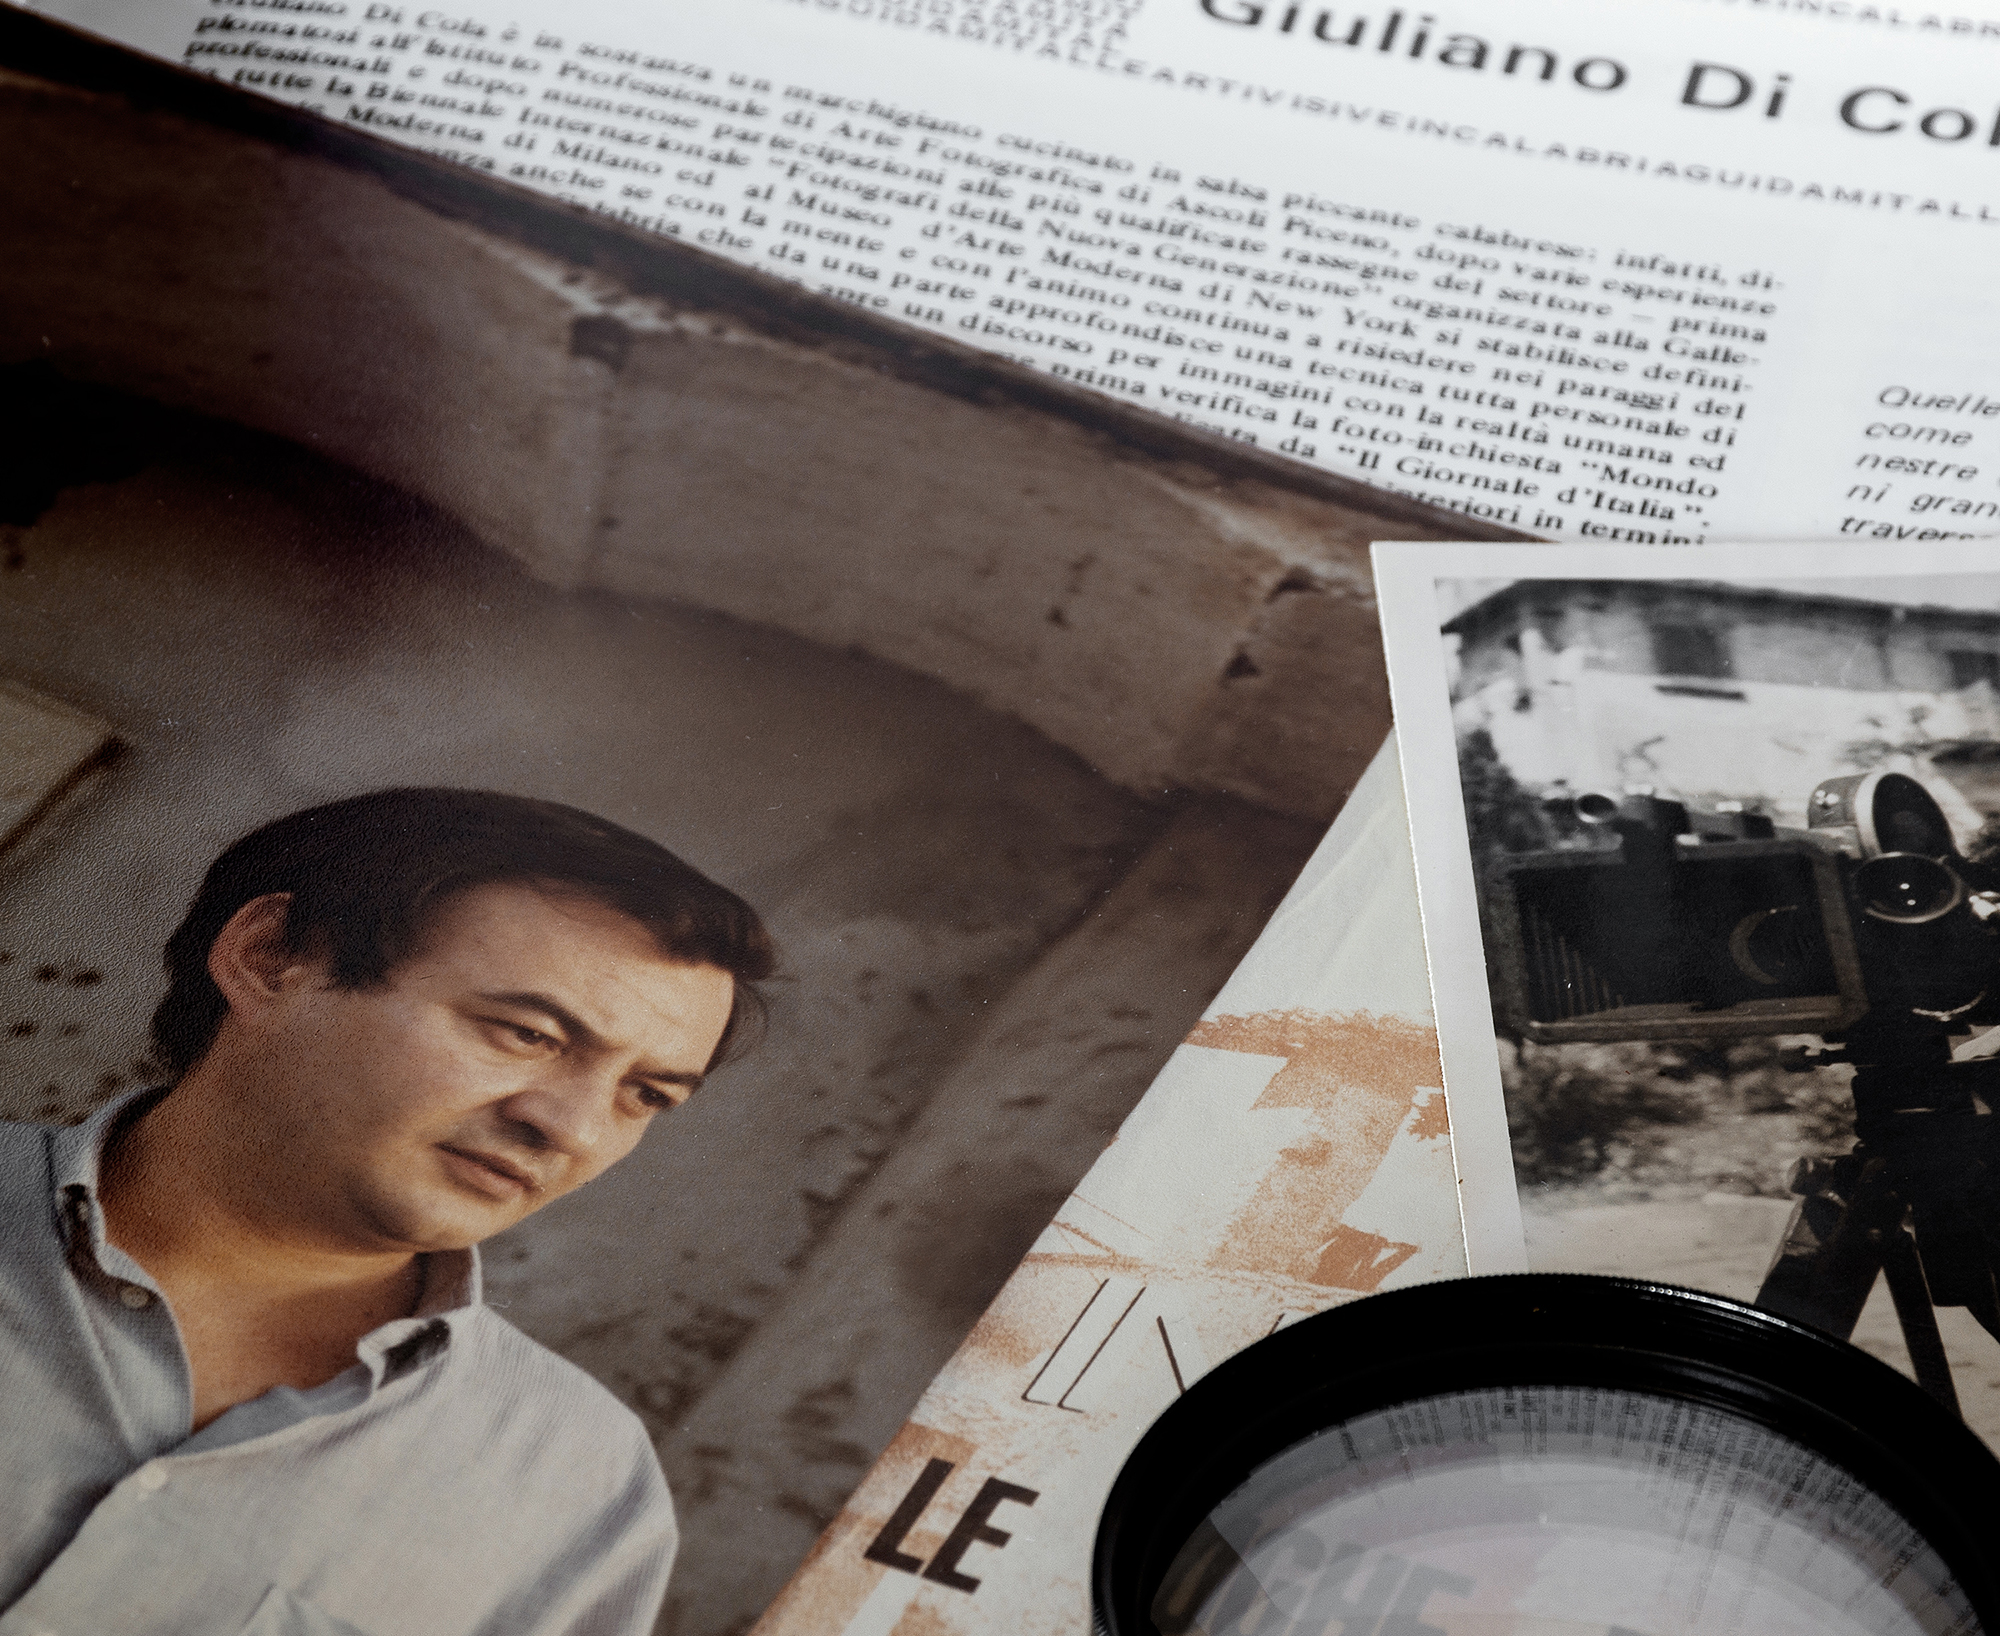 Gianfranco Donadio ricorda Giuliano Di Cola, fotoreporter e fotografo d’arte